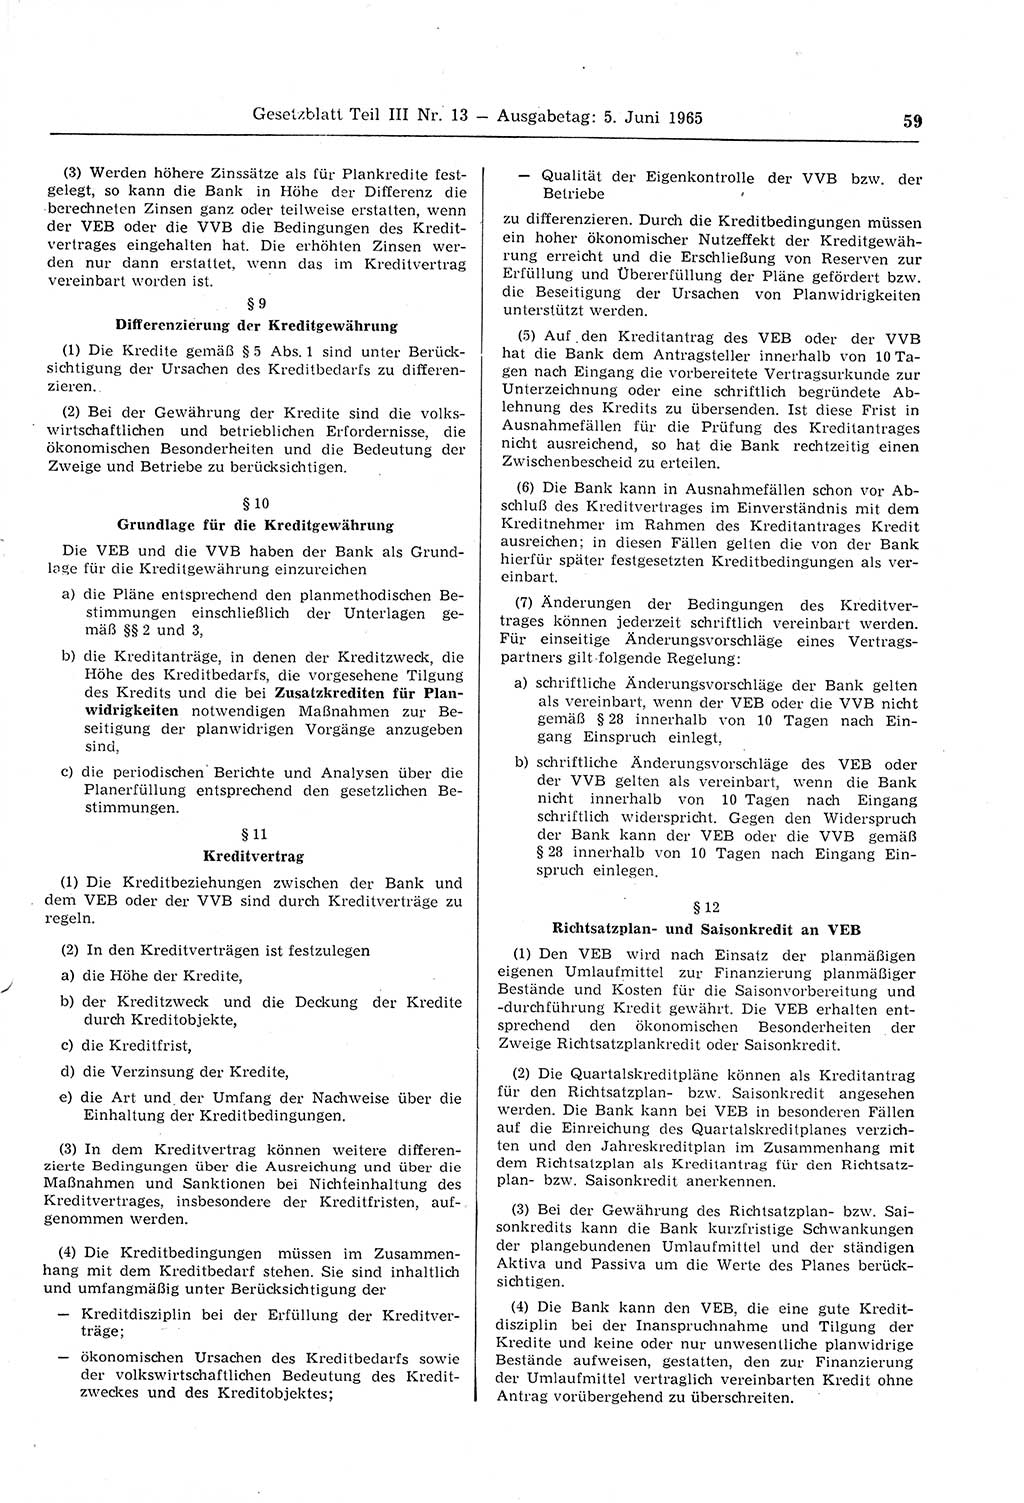 Gesetzblatt (GBl.) der Deutschen Demokratischen Republik (DDR) Teil ⅠⅠⅠ 1965, Seite 59 (GBl. DDR ⅠⅠⅠ 1965, S. 59)